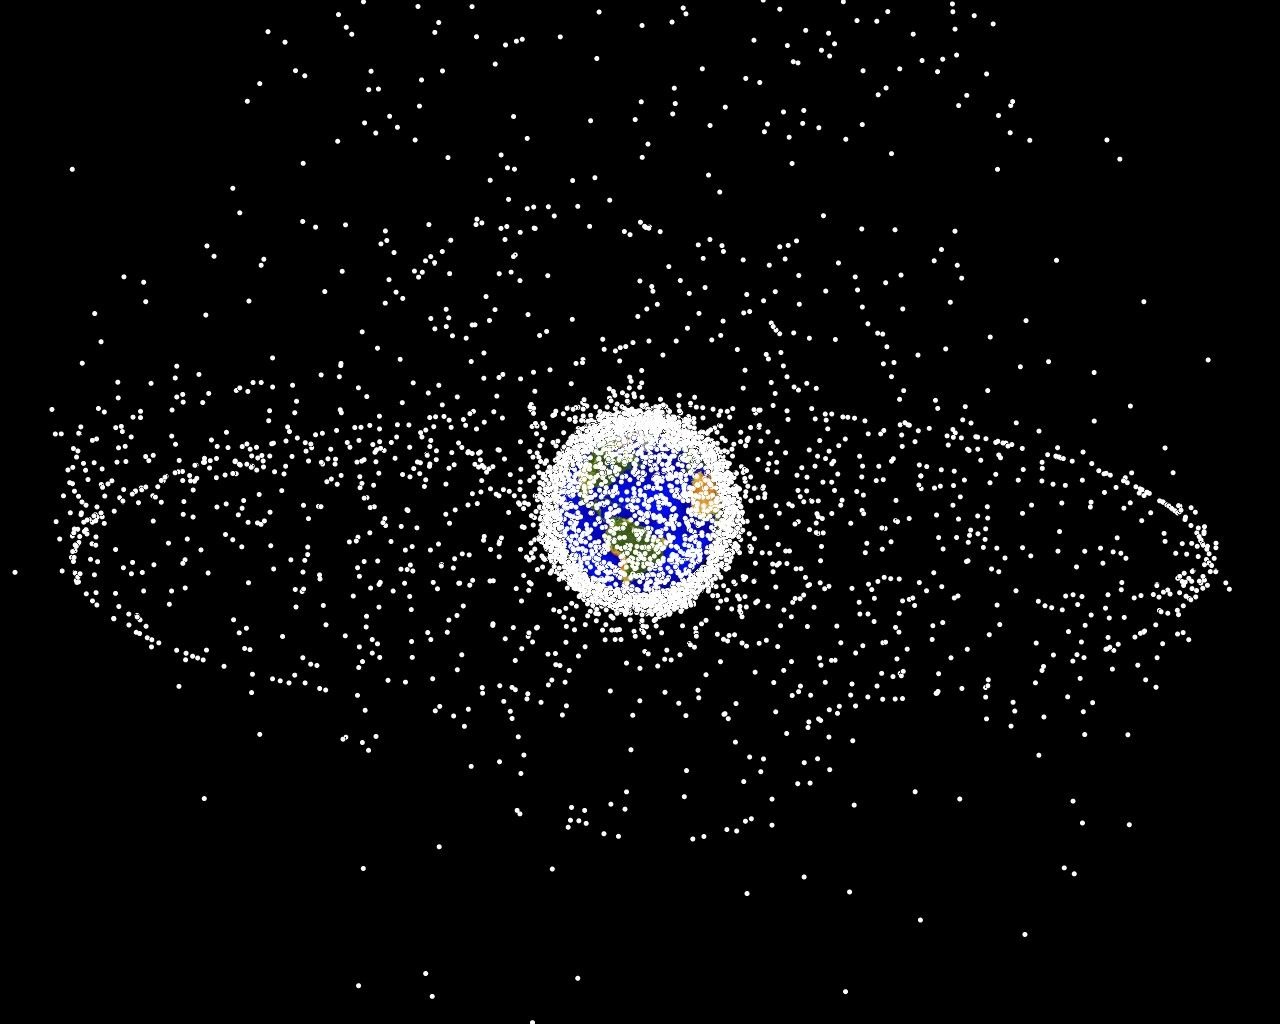 Računalno generirana slika objekata u Zemljinoj orbiti koji se trenutno prate. Ono što je alarmantno jest da otprilike 95% objekata na ovoj ilustraciji predstavljaju orbitalne krhotine, tj. satelite koji više nisu u funkciji te su stoga 'svemirski otpad' (©NASA).